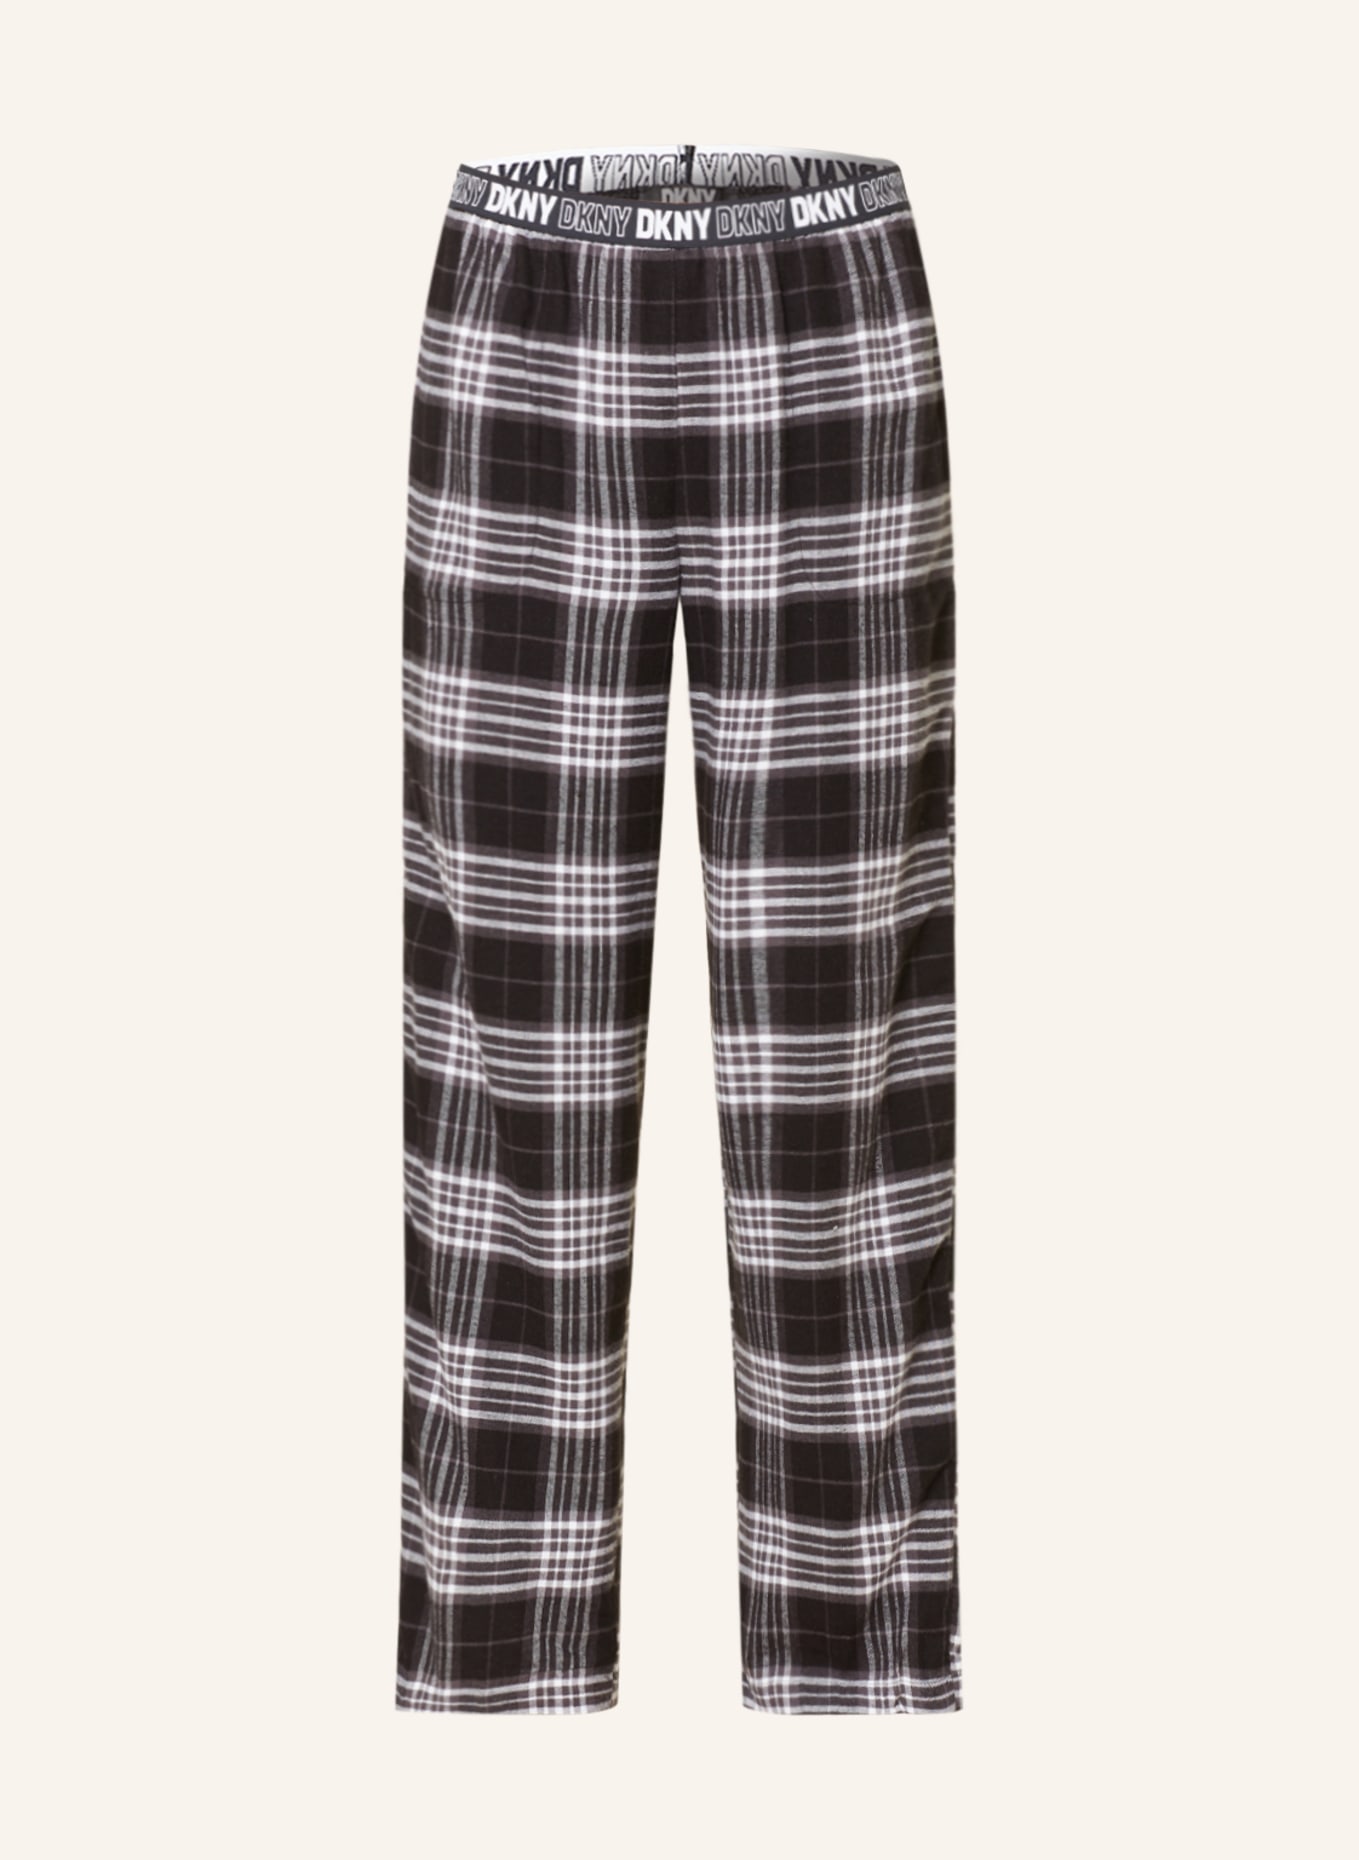 DKNY Pajama pants in flannel, Color: BLACK/ DARK GRAY/ WHITE (Image 1)